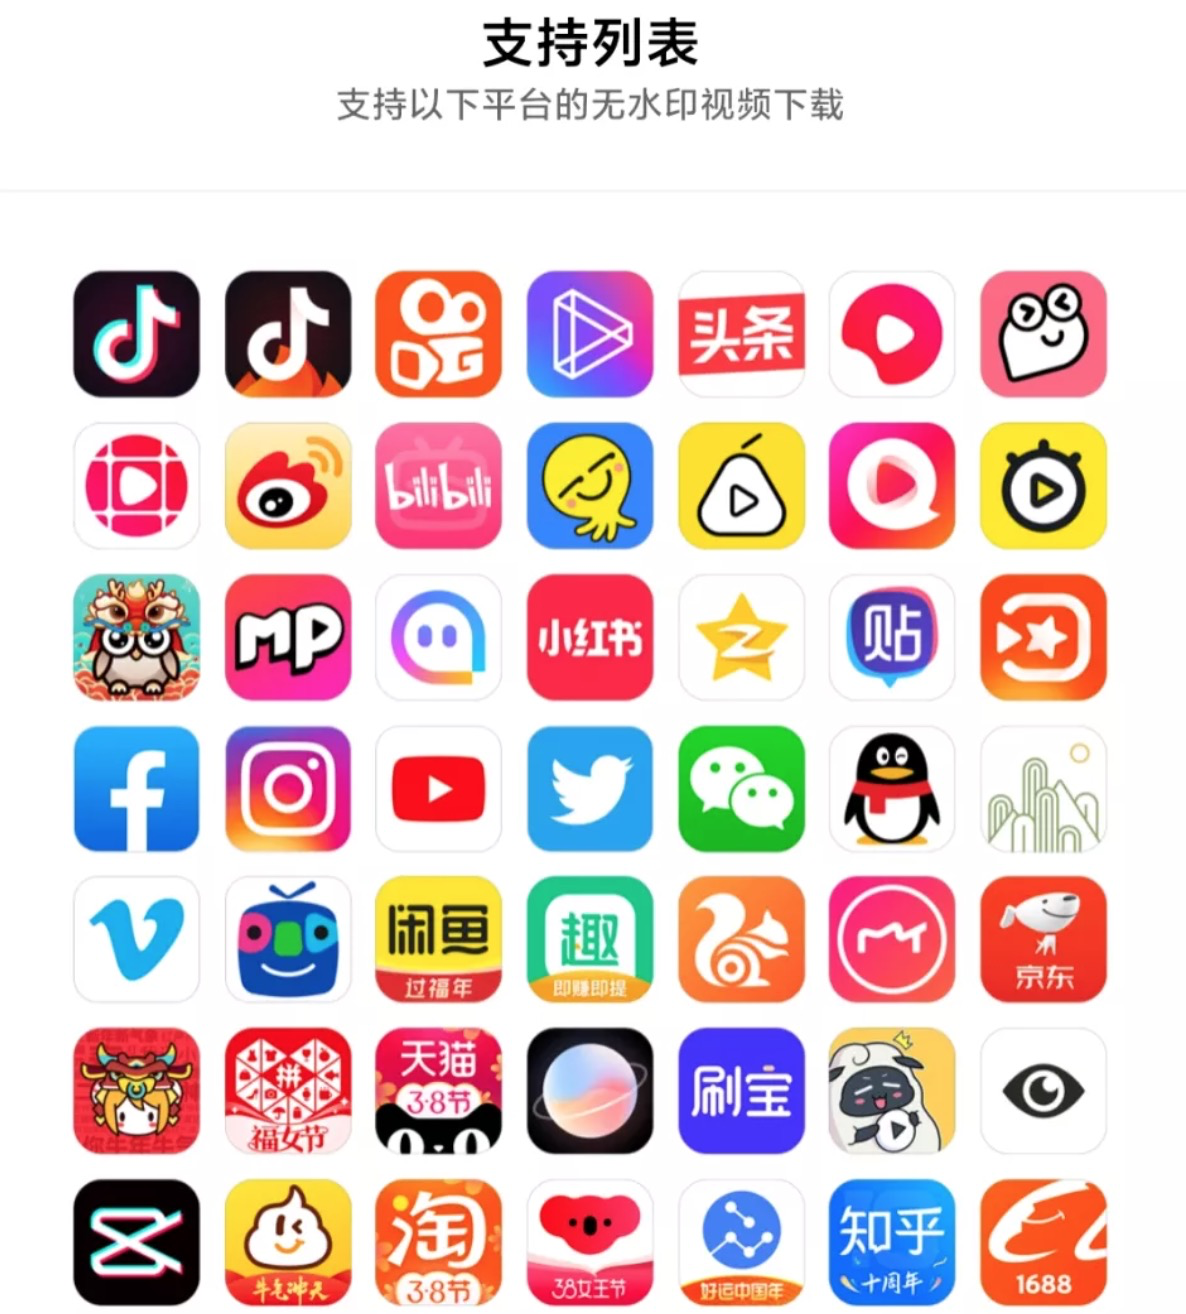 苹果版越南社交软件下载越南版本zalo苹果版-第2张图片-太平洋在线下载